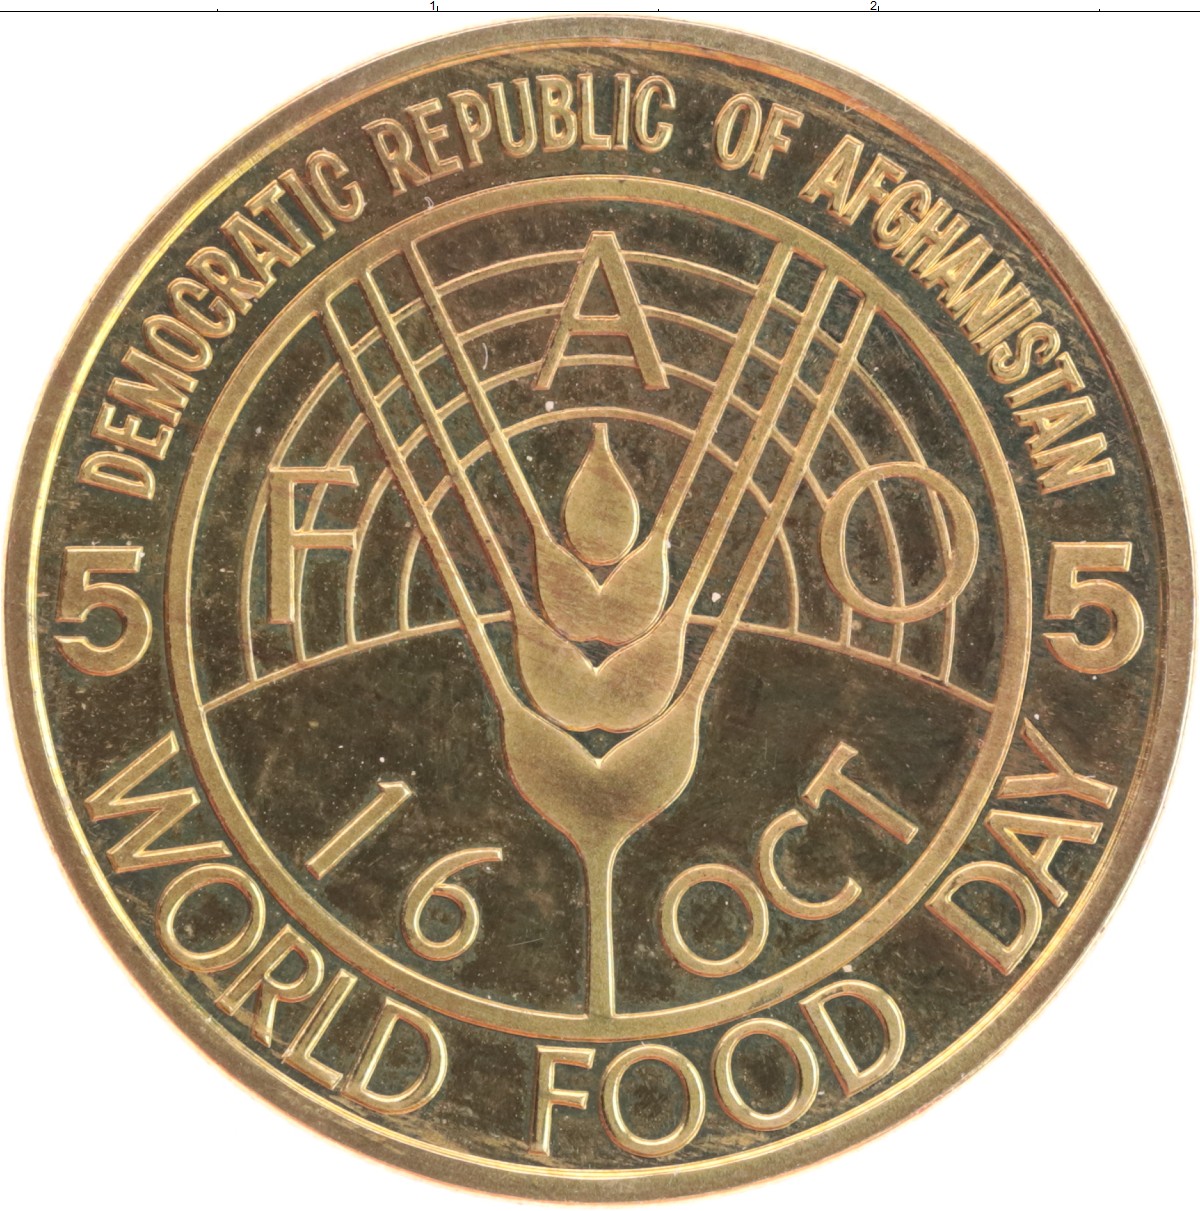 Фао оон. Продовольственная и сельскохозяйственная организация ООН. ФАО логотип. Монеты Афганистана.